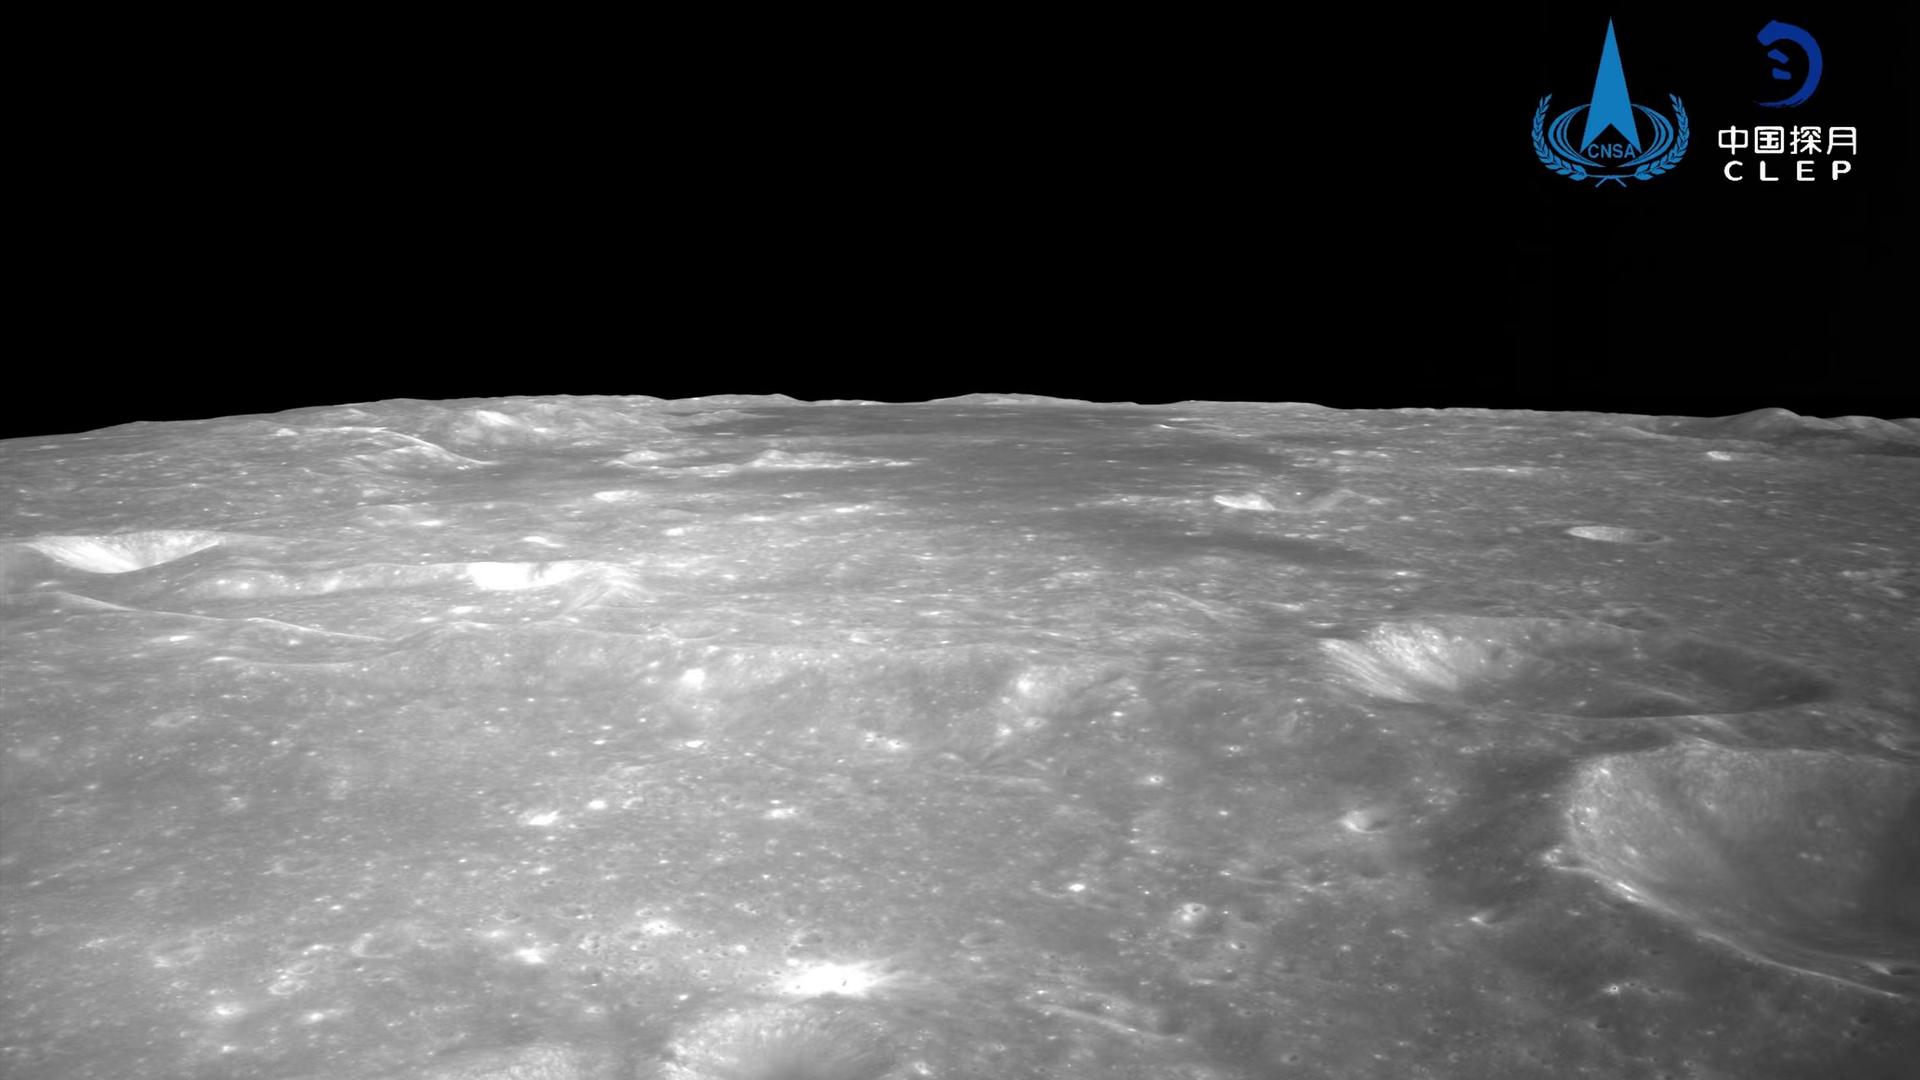 Eine graue, mit Kratern übersäte Fläche zeigt die Mond-Oberfläche. Das Foto hat die chinesische Raum-Sonde aufgenommen.